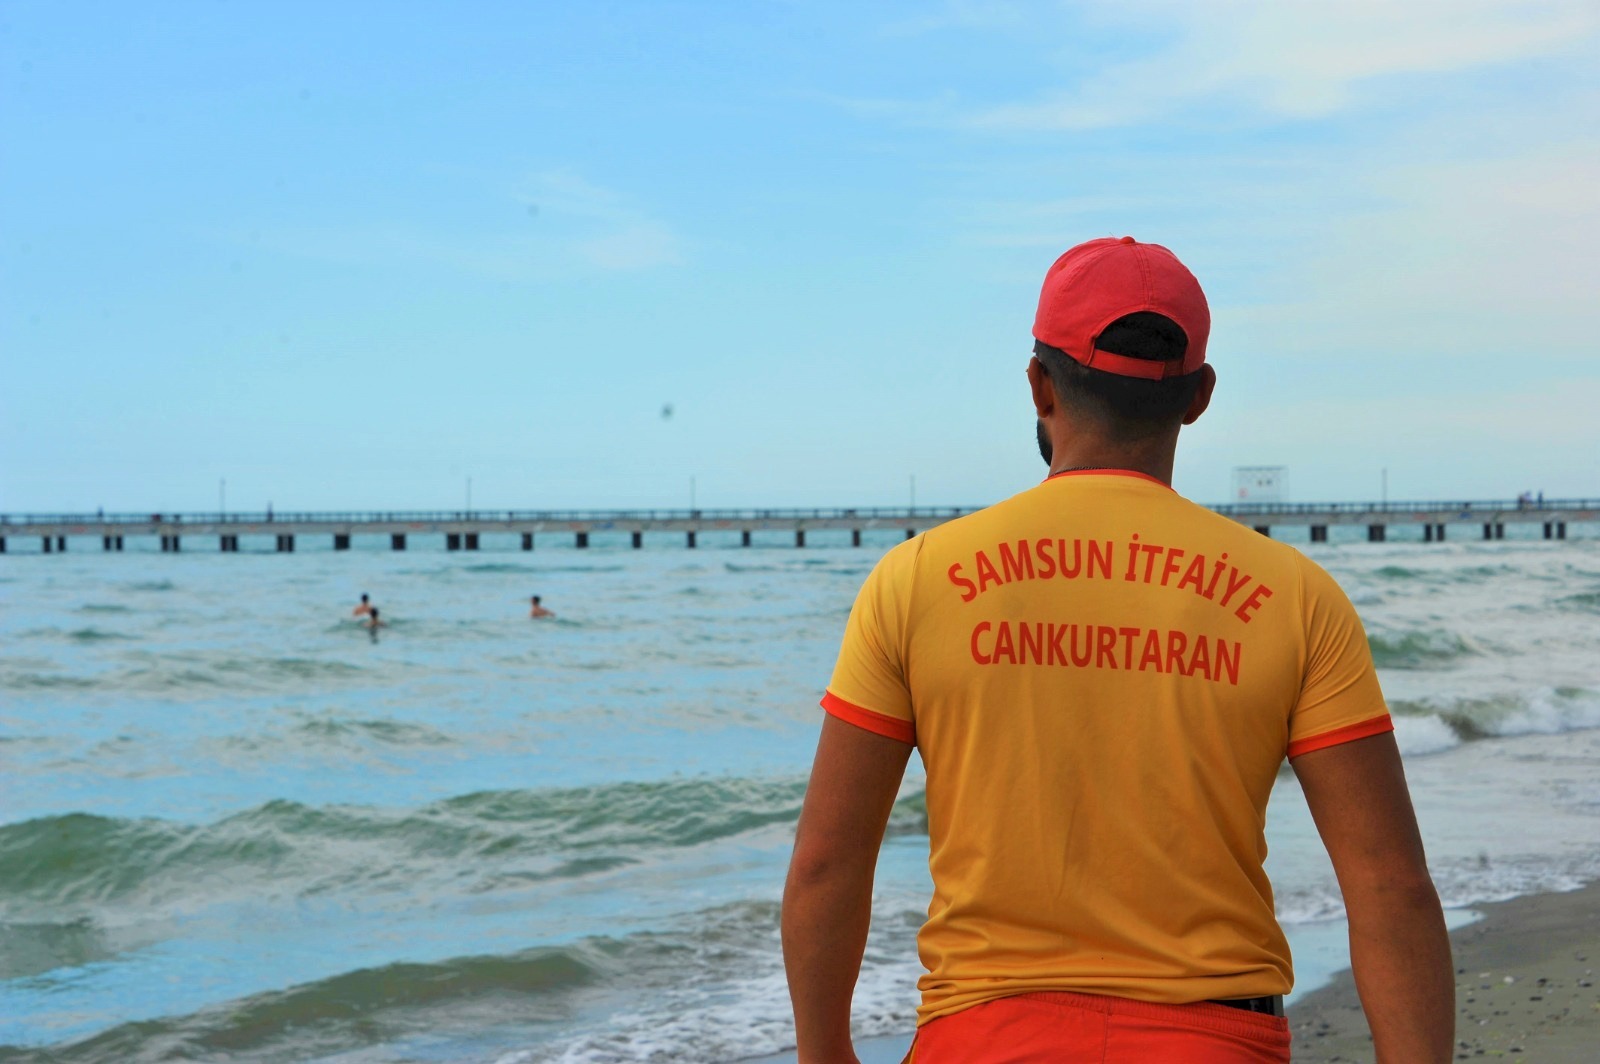 Samsun’da cankurtaranlar bu yaz 32 kişiyi boğulmaktan kurtardı